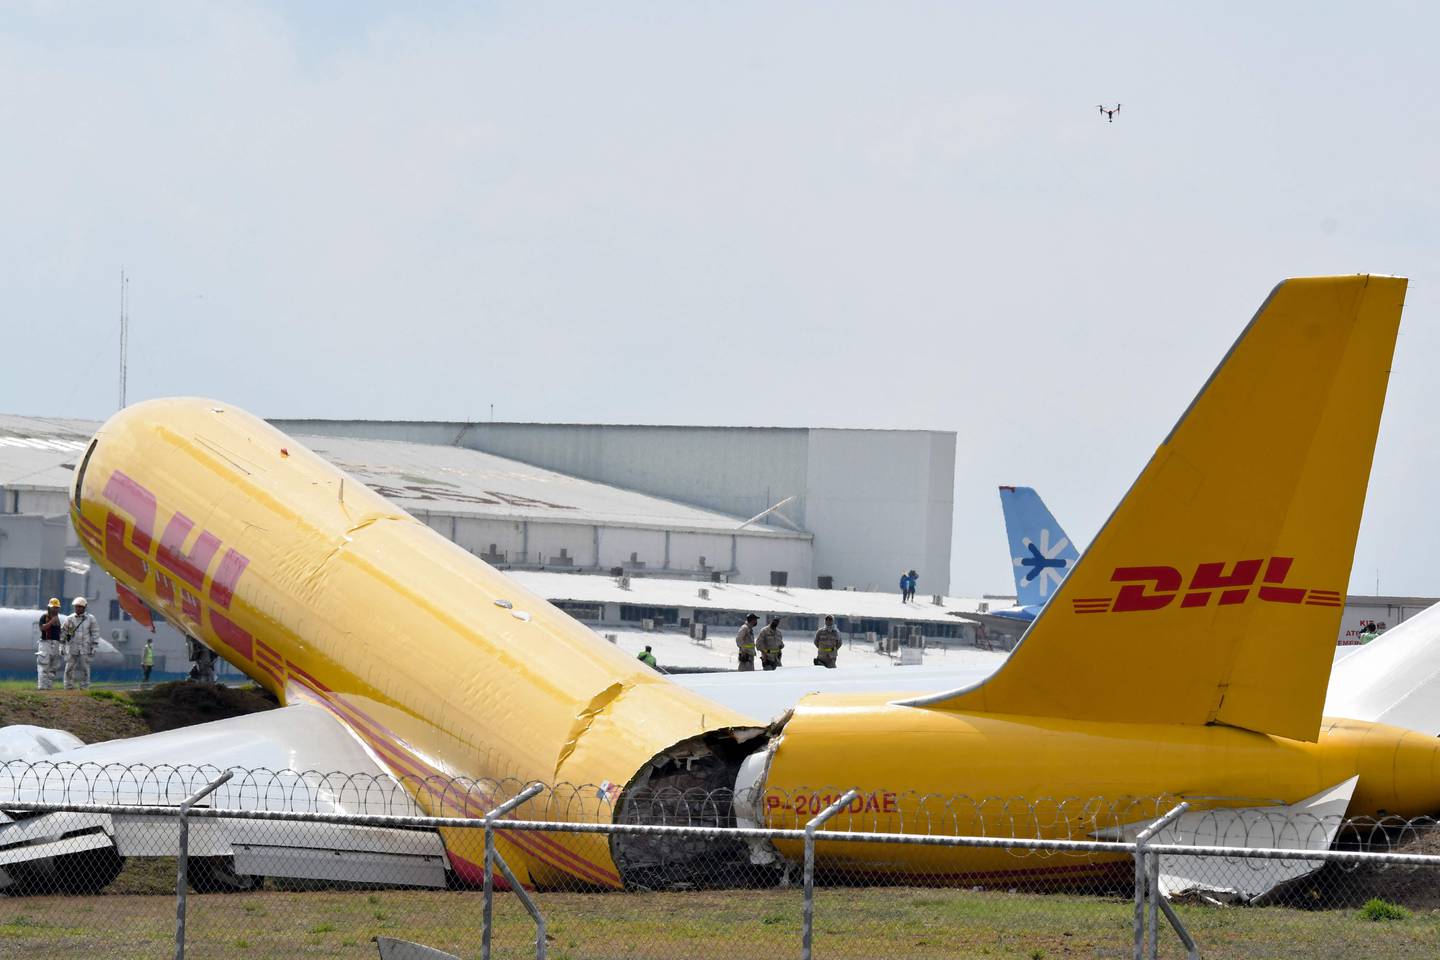 Se ve un avión de carga de DHL después de un aterrizaje de emergencia en el aeropuerto internacional Juan Santa María debido a un problema mecánico, en Alajuela, Costa Rica, el 7 de abril de 2022. AFP